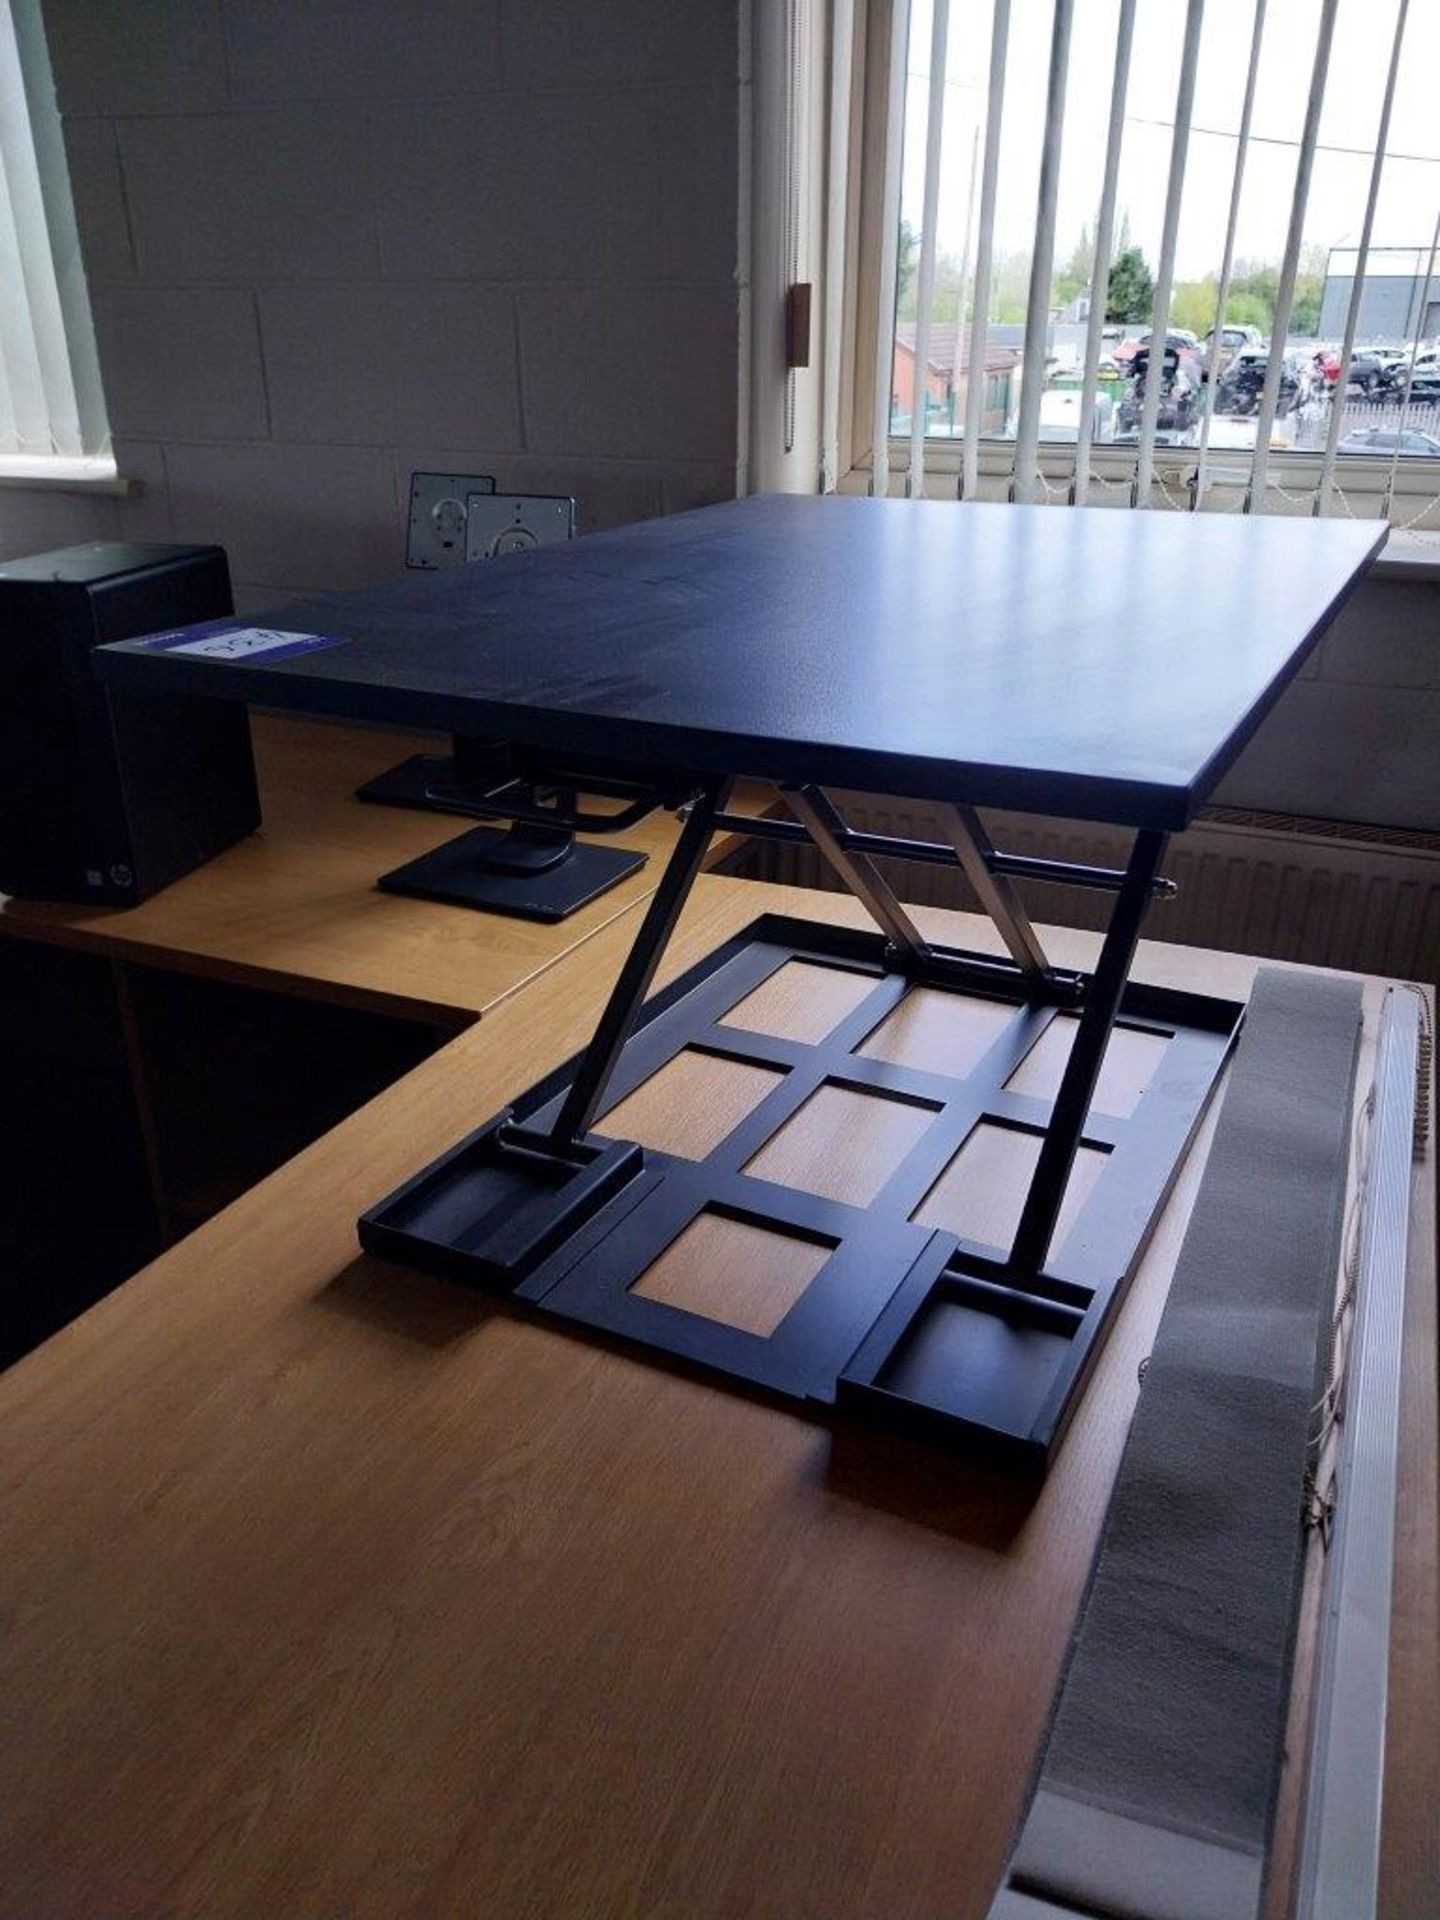 Desk platform riser - Image 2 of 2